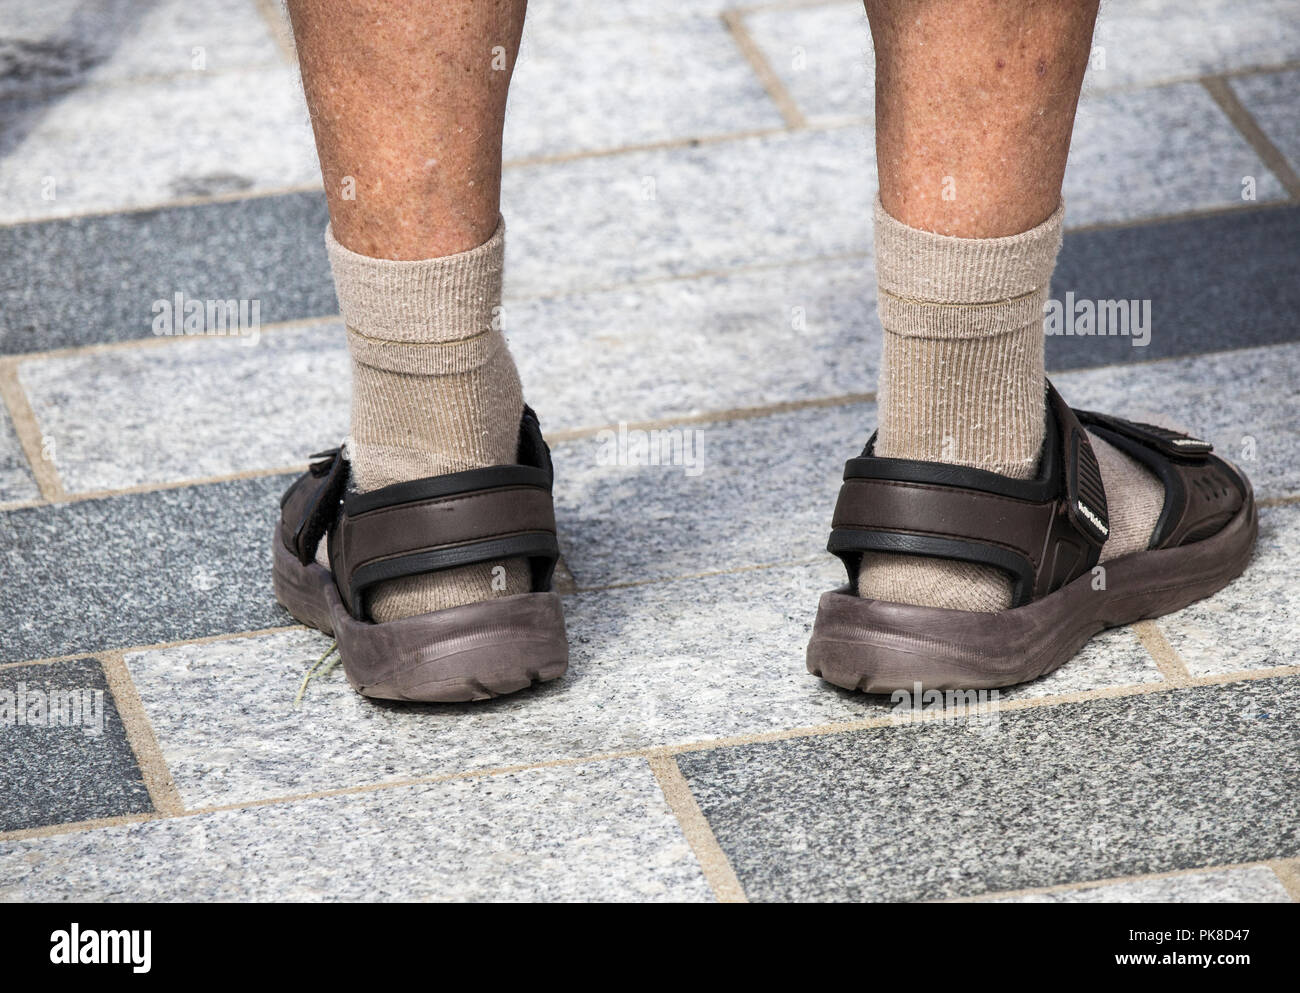 Homme portant des chaussettes et sandales Photo Stock - Alamy